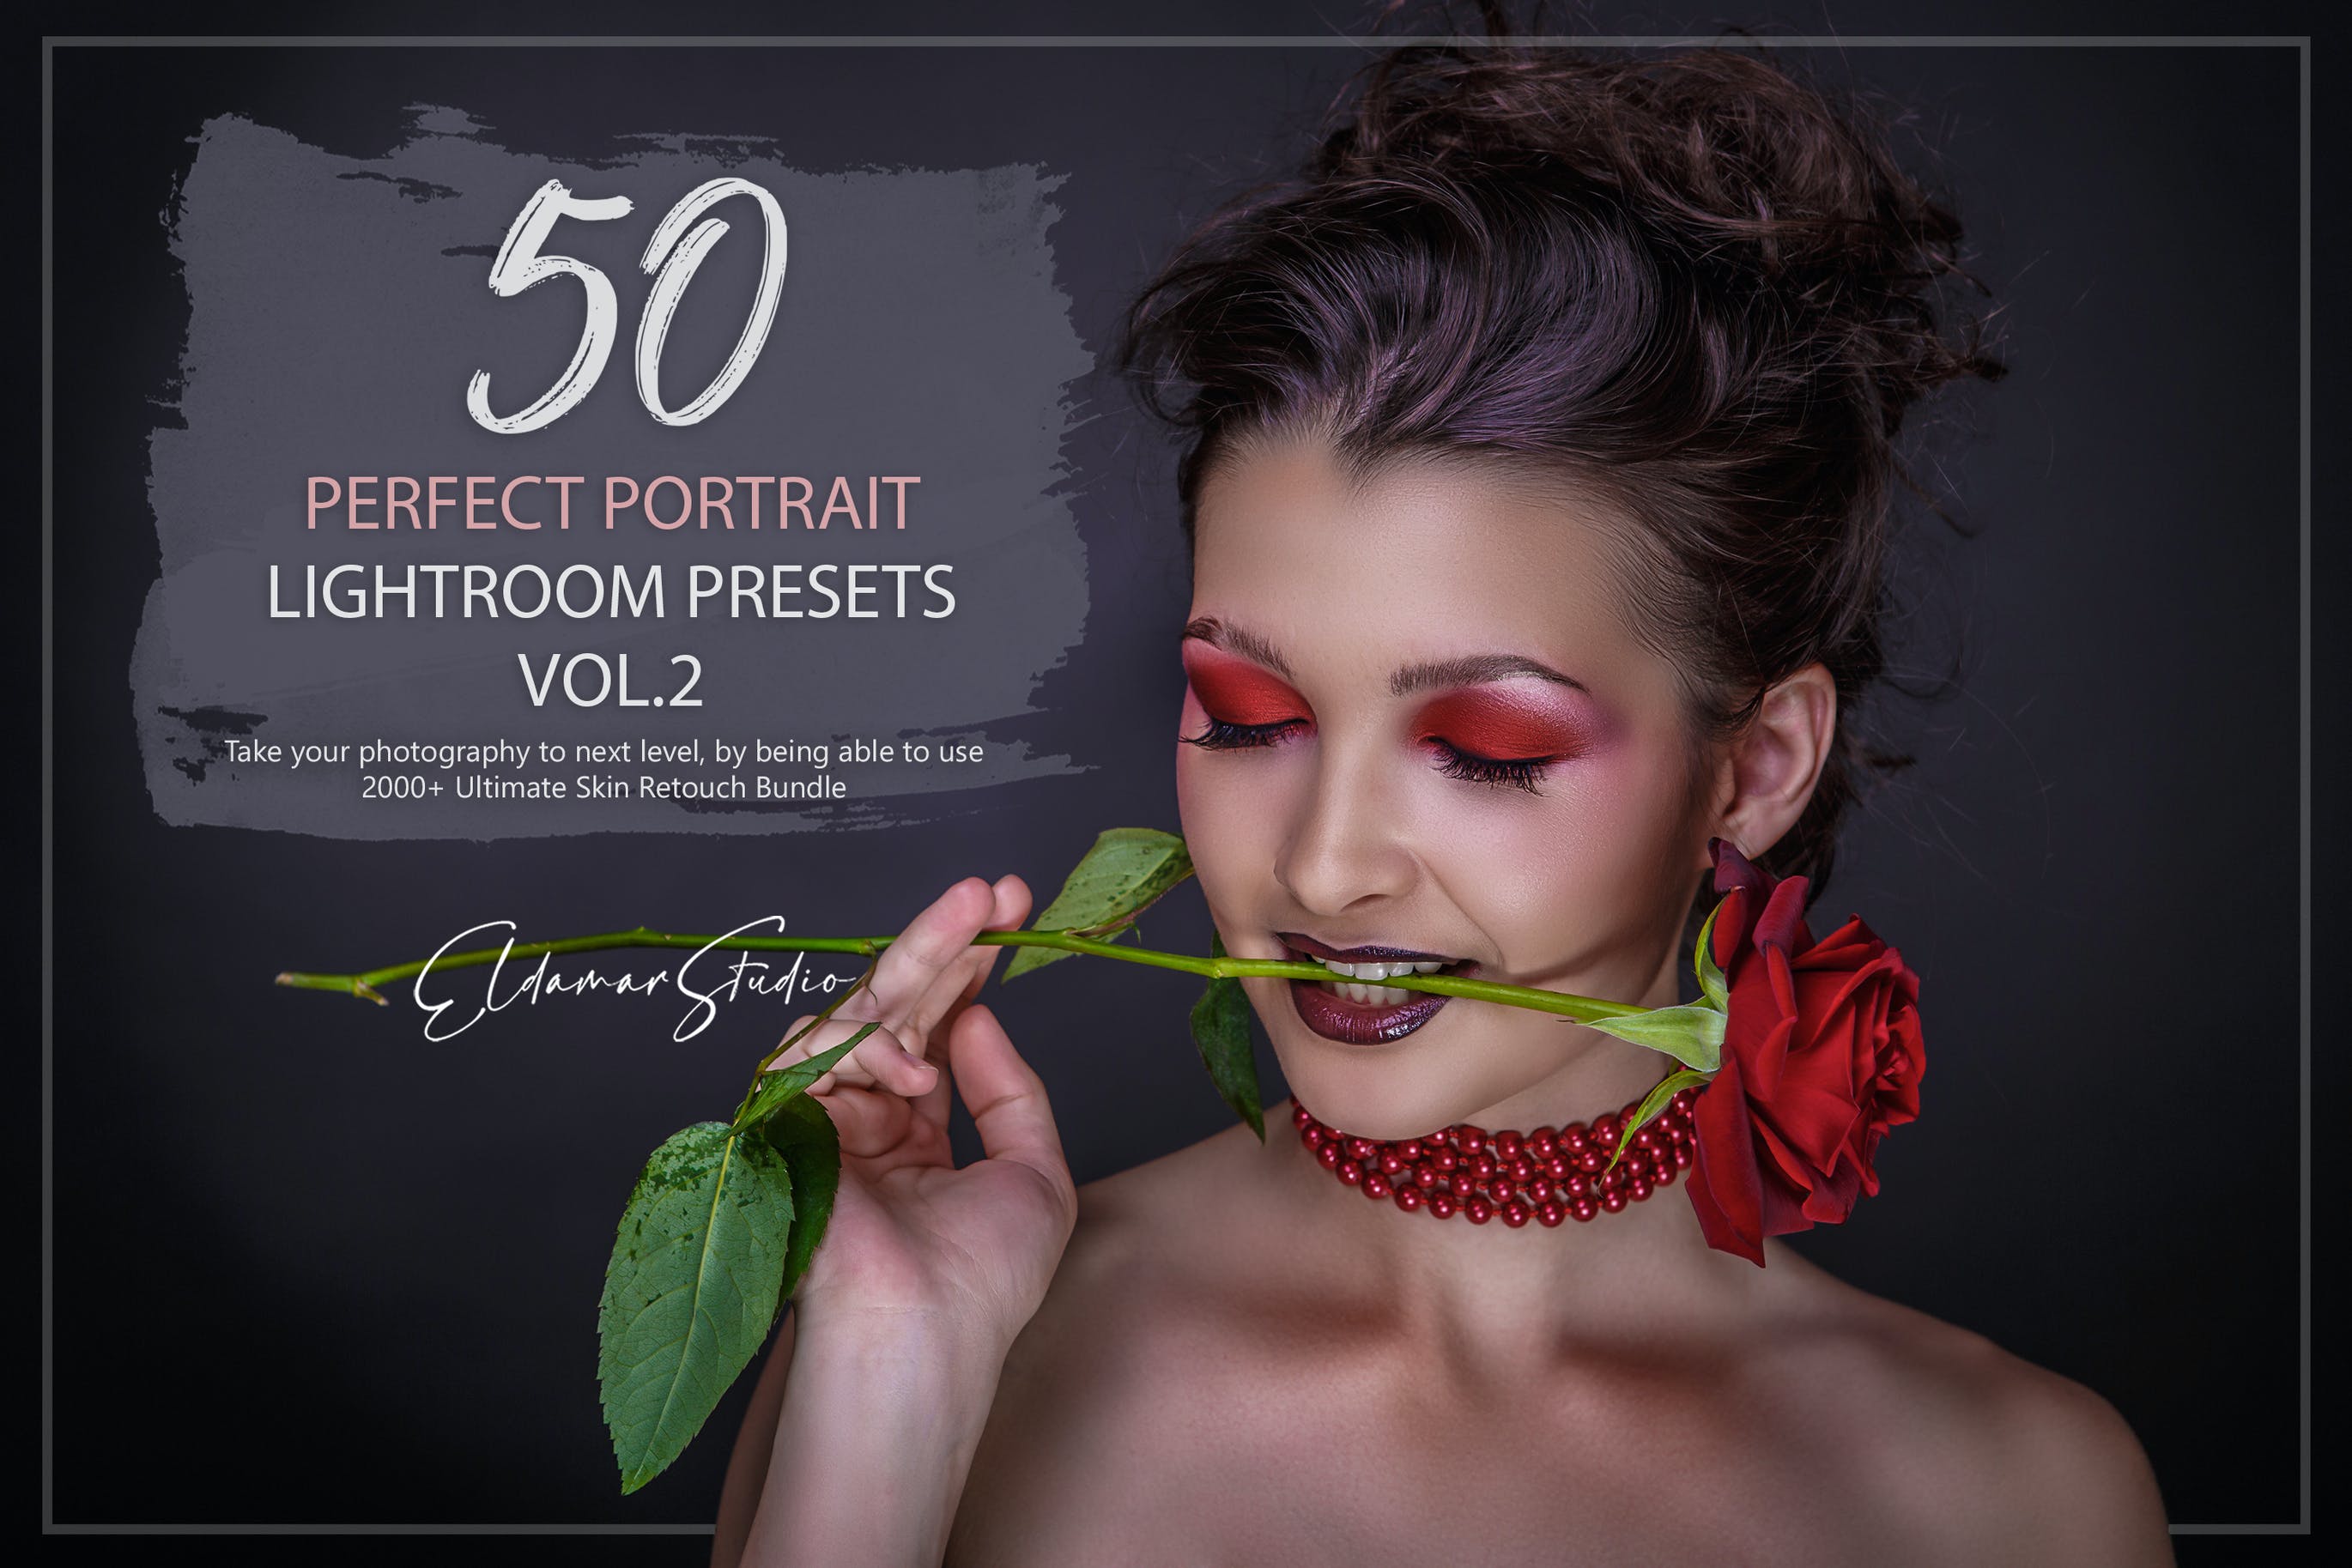 50个人物肖像照片后期修图LR预设v2 50 Perfect Portrait Lightroom Presets – Vol. 2 插件预设 第1张